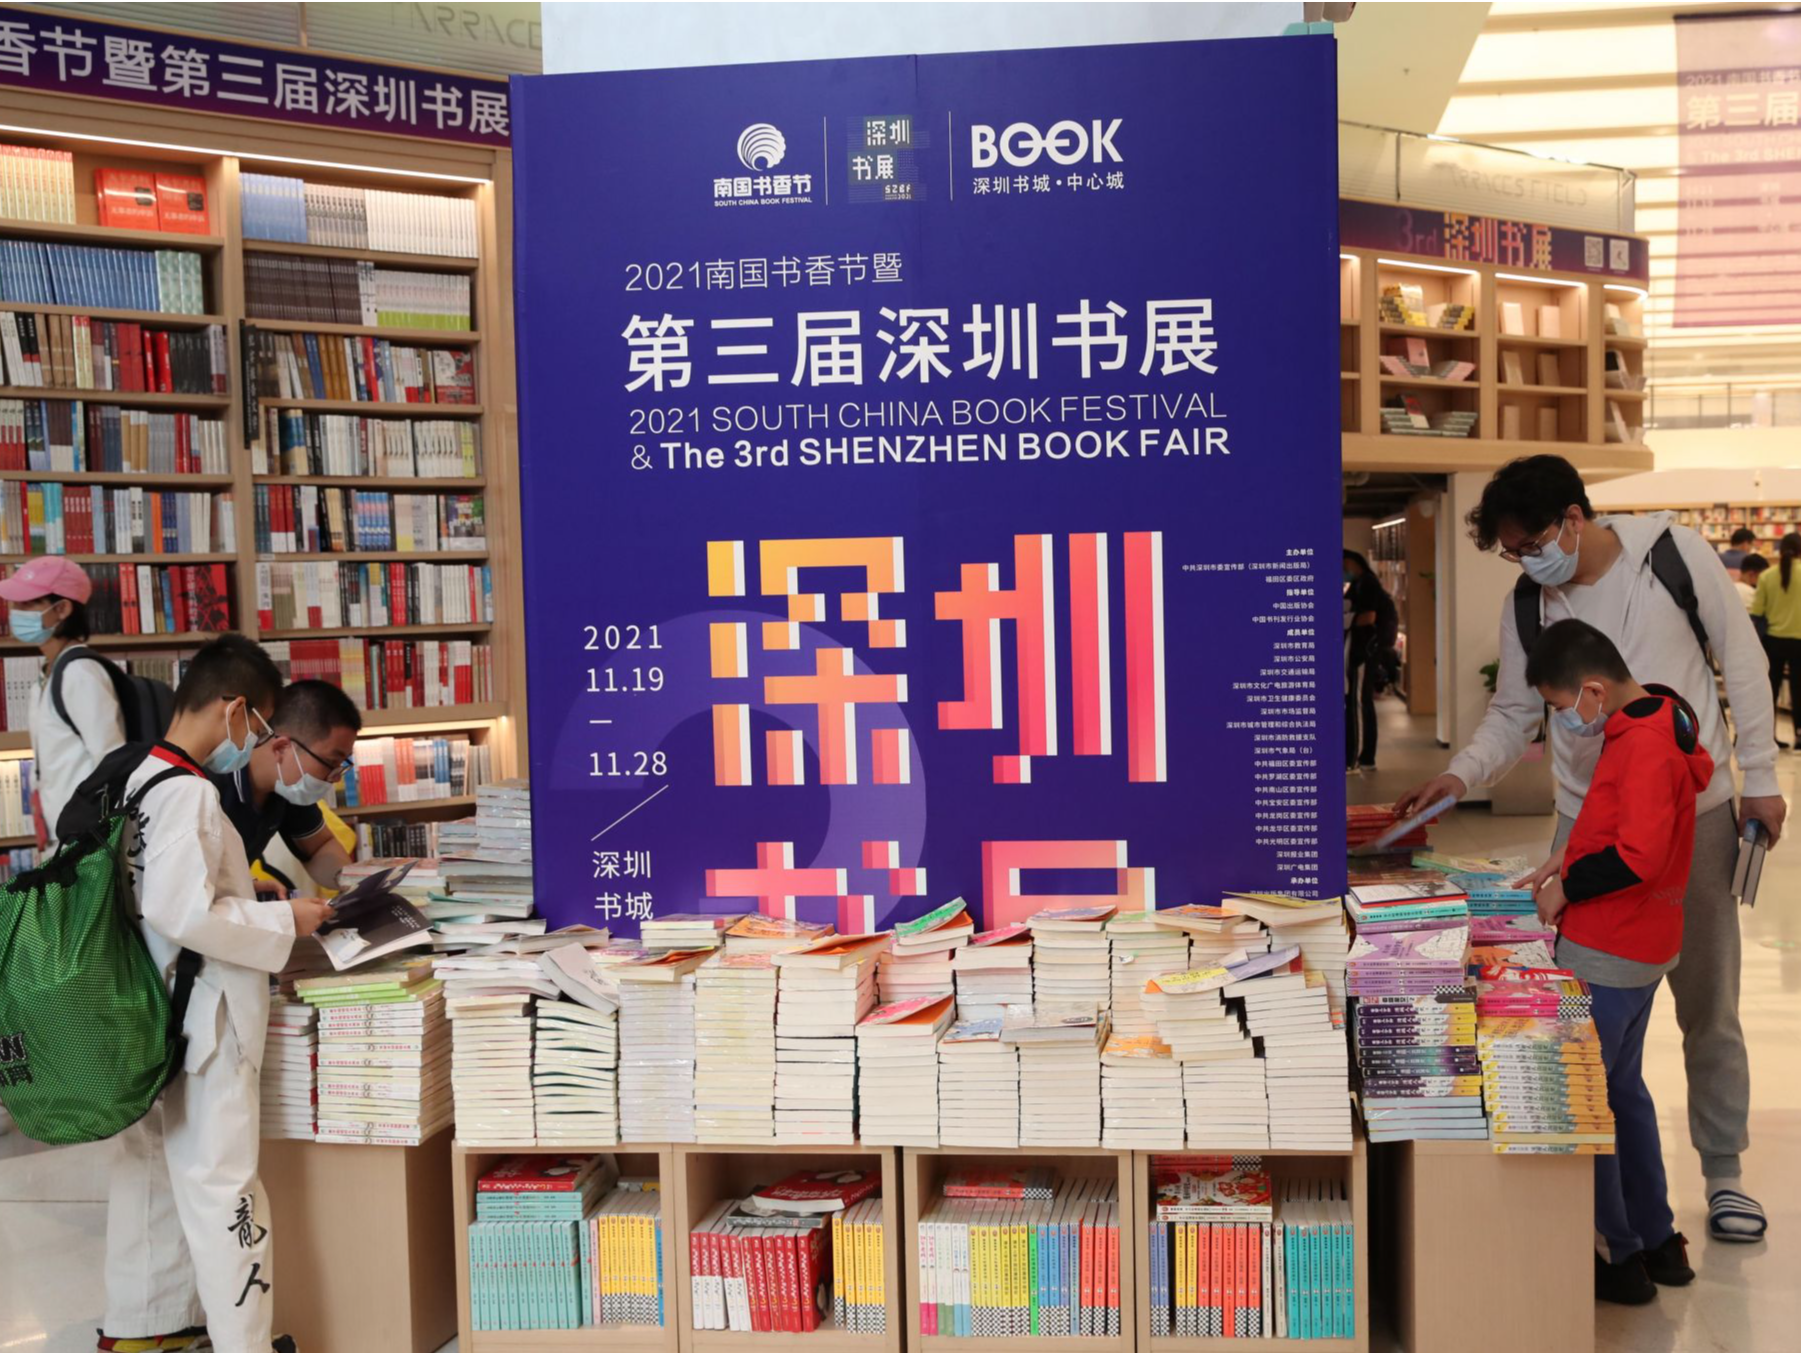 点亮节日，全新出发！第三届深圳书展正式启幕